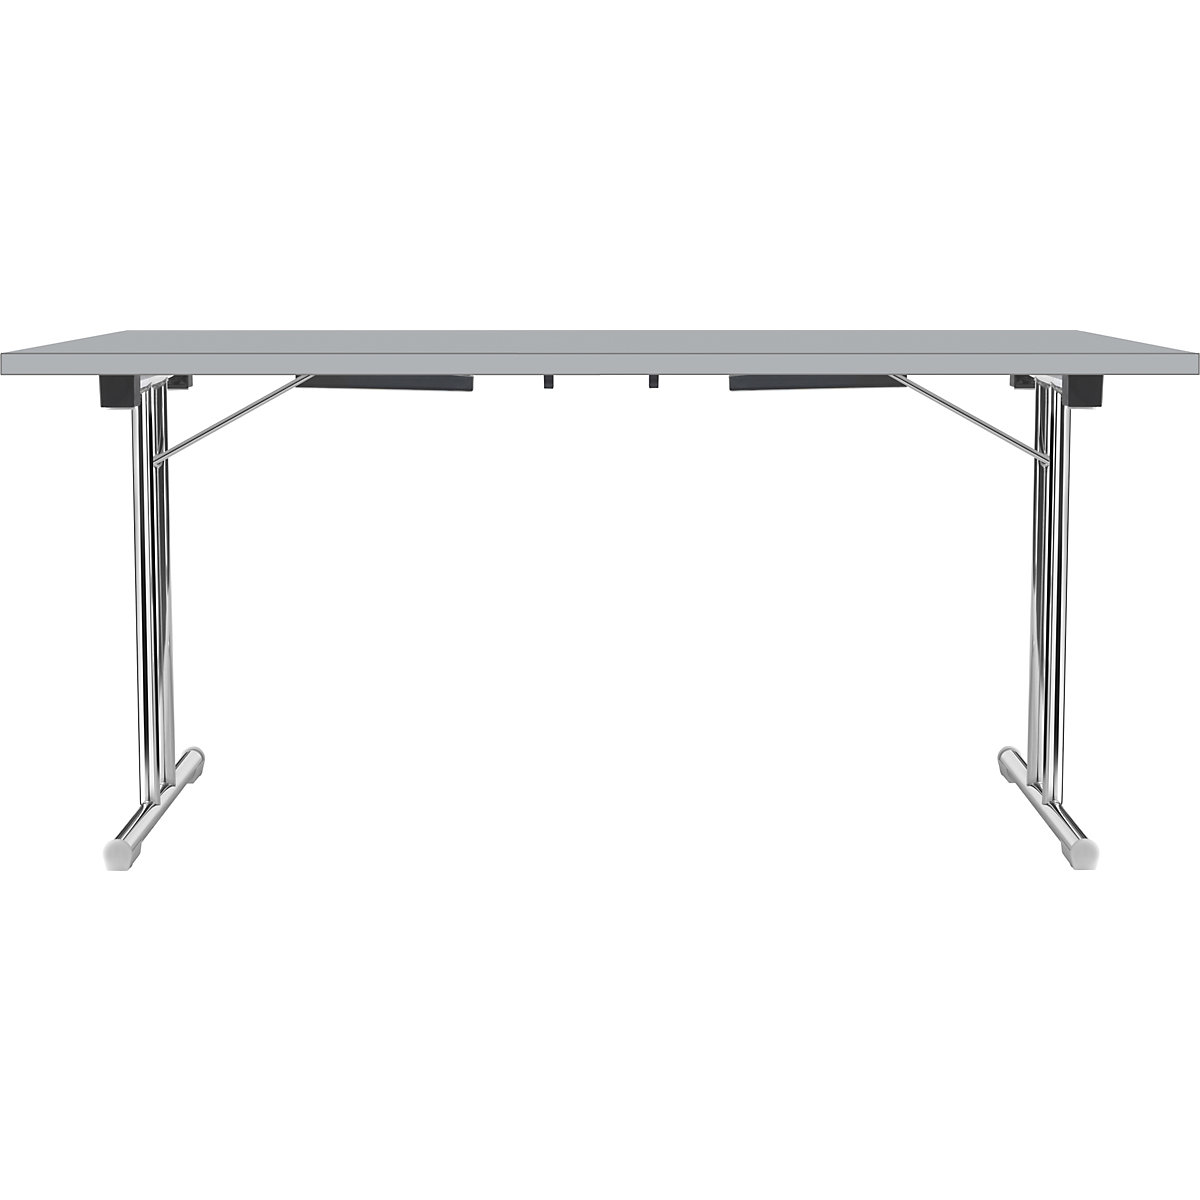 Tavolo pieghevole con basamento a T doppio, telaio in tubo tondo d'acciaio, cromato, grigio chiaro/grigio chiaro, largh. x prof. 1400 x 700 mm-15